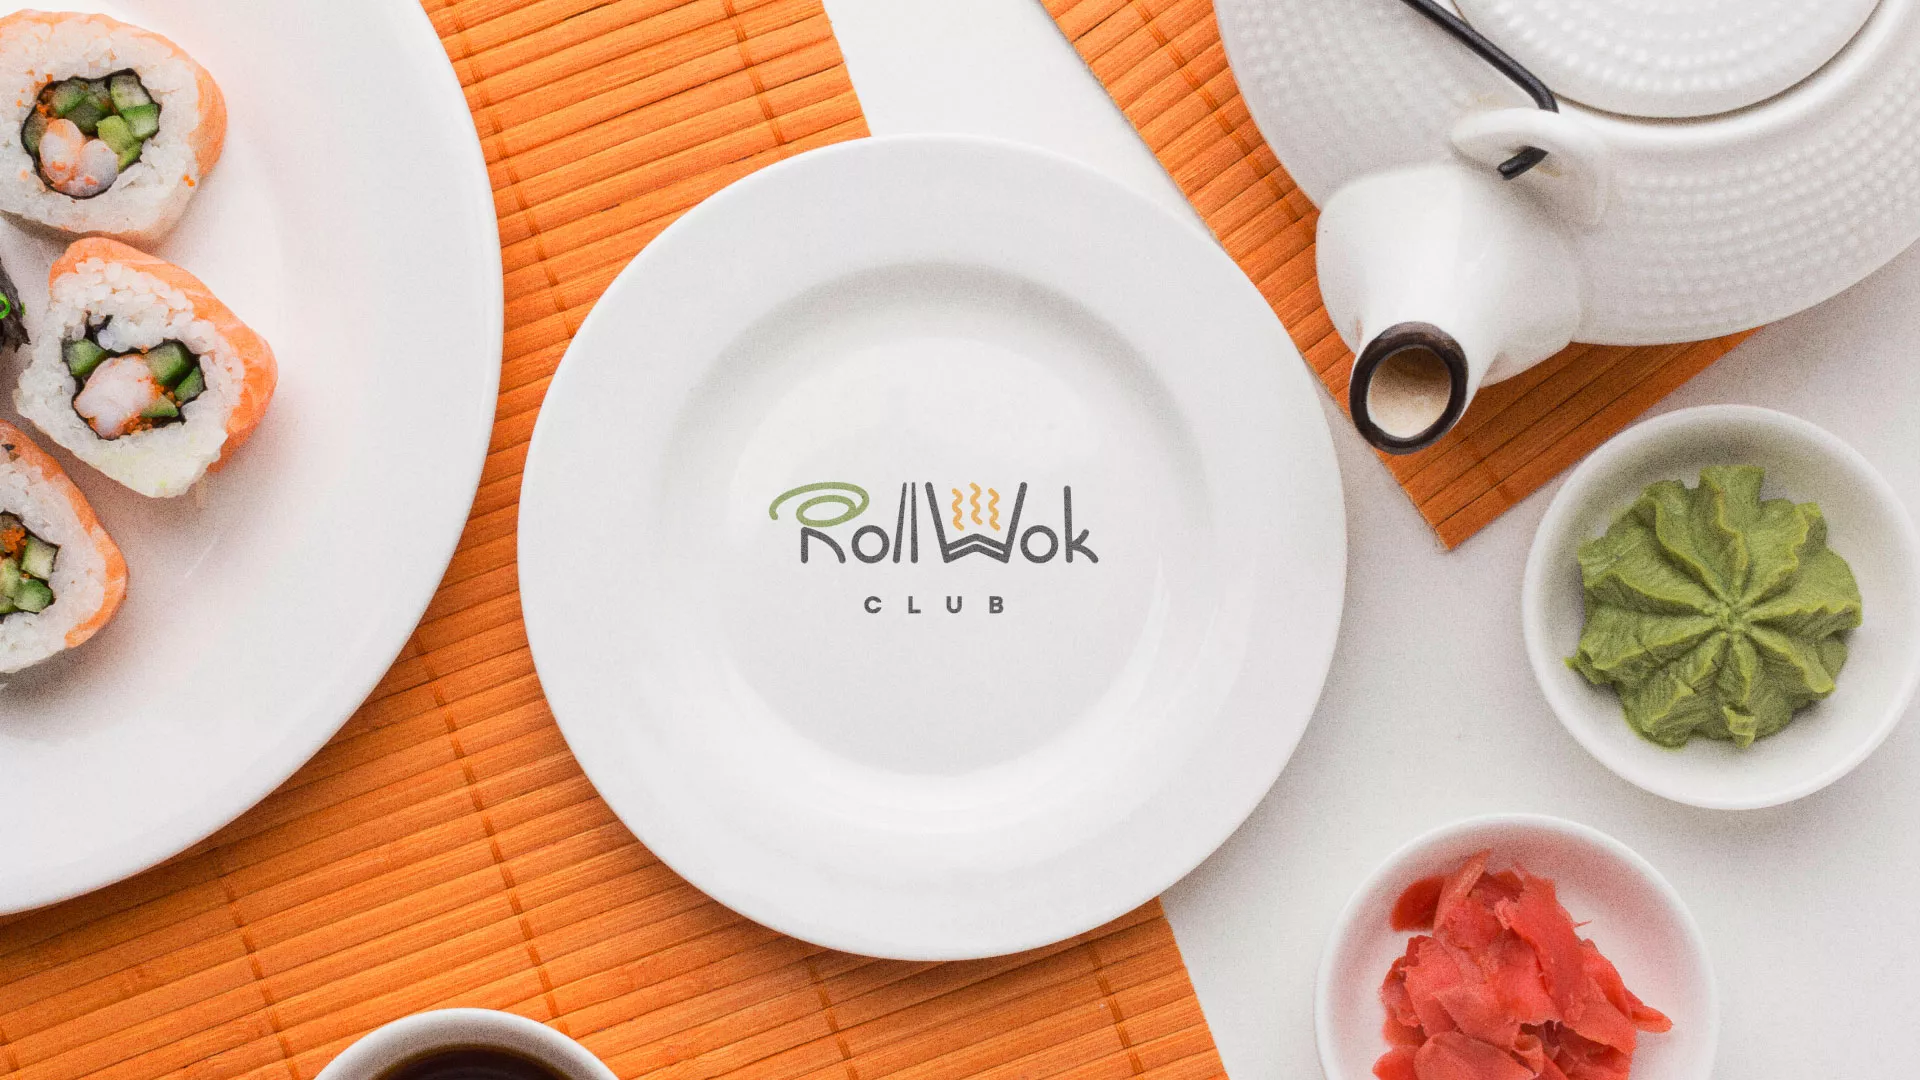 Разработка логотипа и фирменного стиля суши-бара «Roll Wok Club» в Ясном